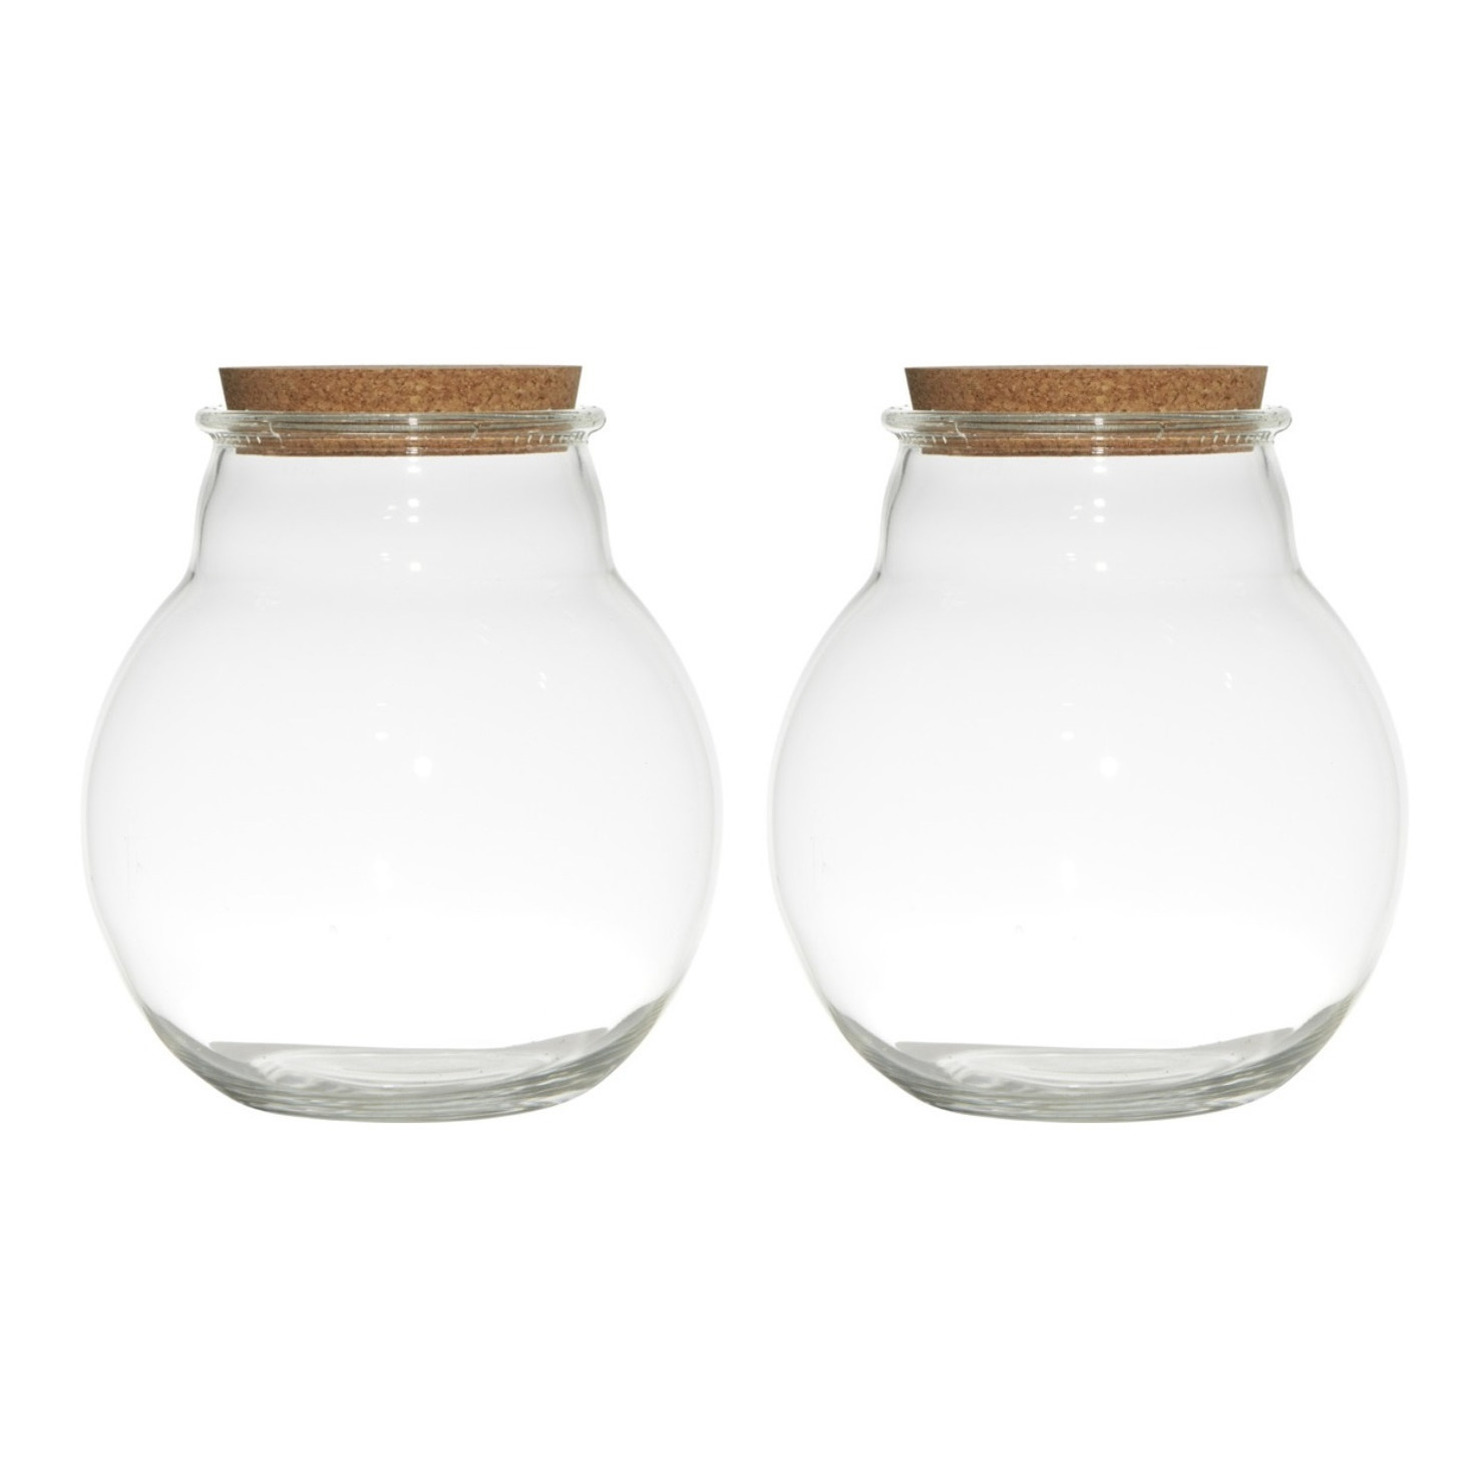 Set van 2x stuks glazen voorraadpotten-snoeppotten-terrarium vazen van 19 x 21.5 cm met kurk dop